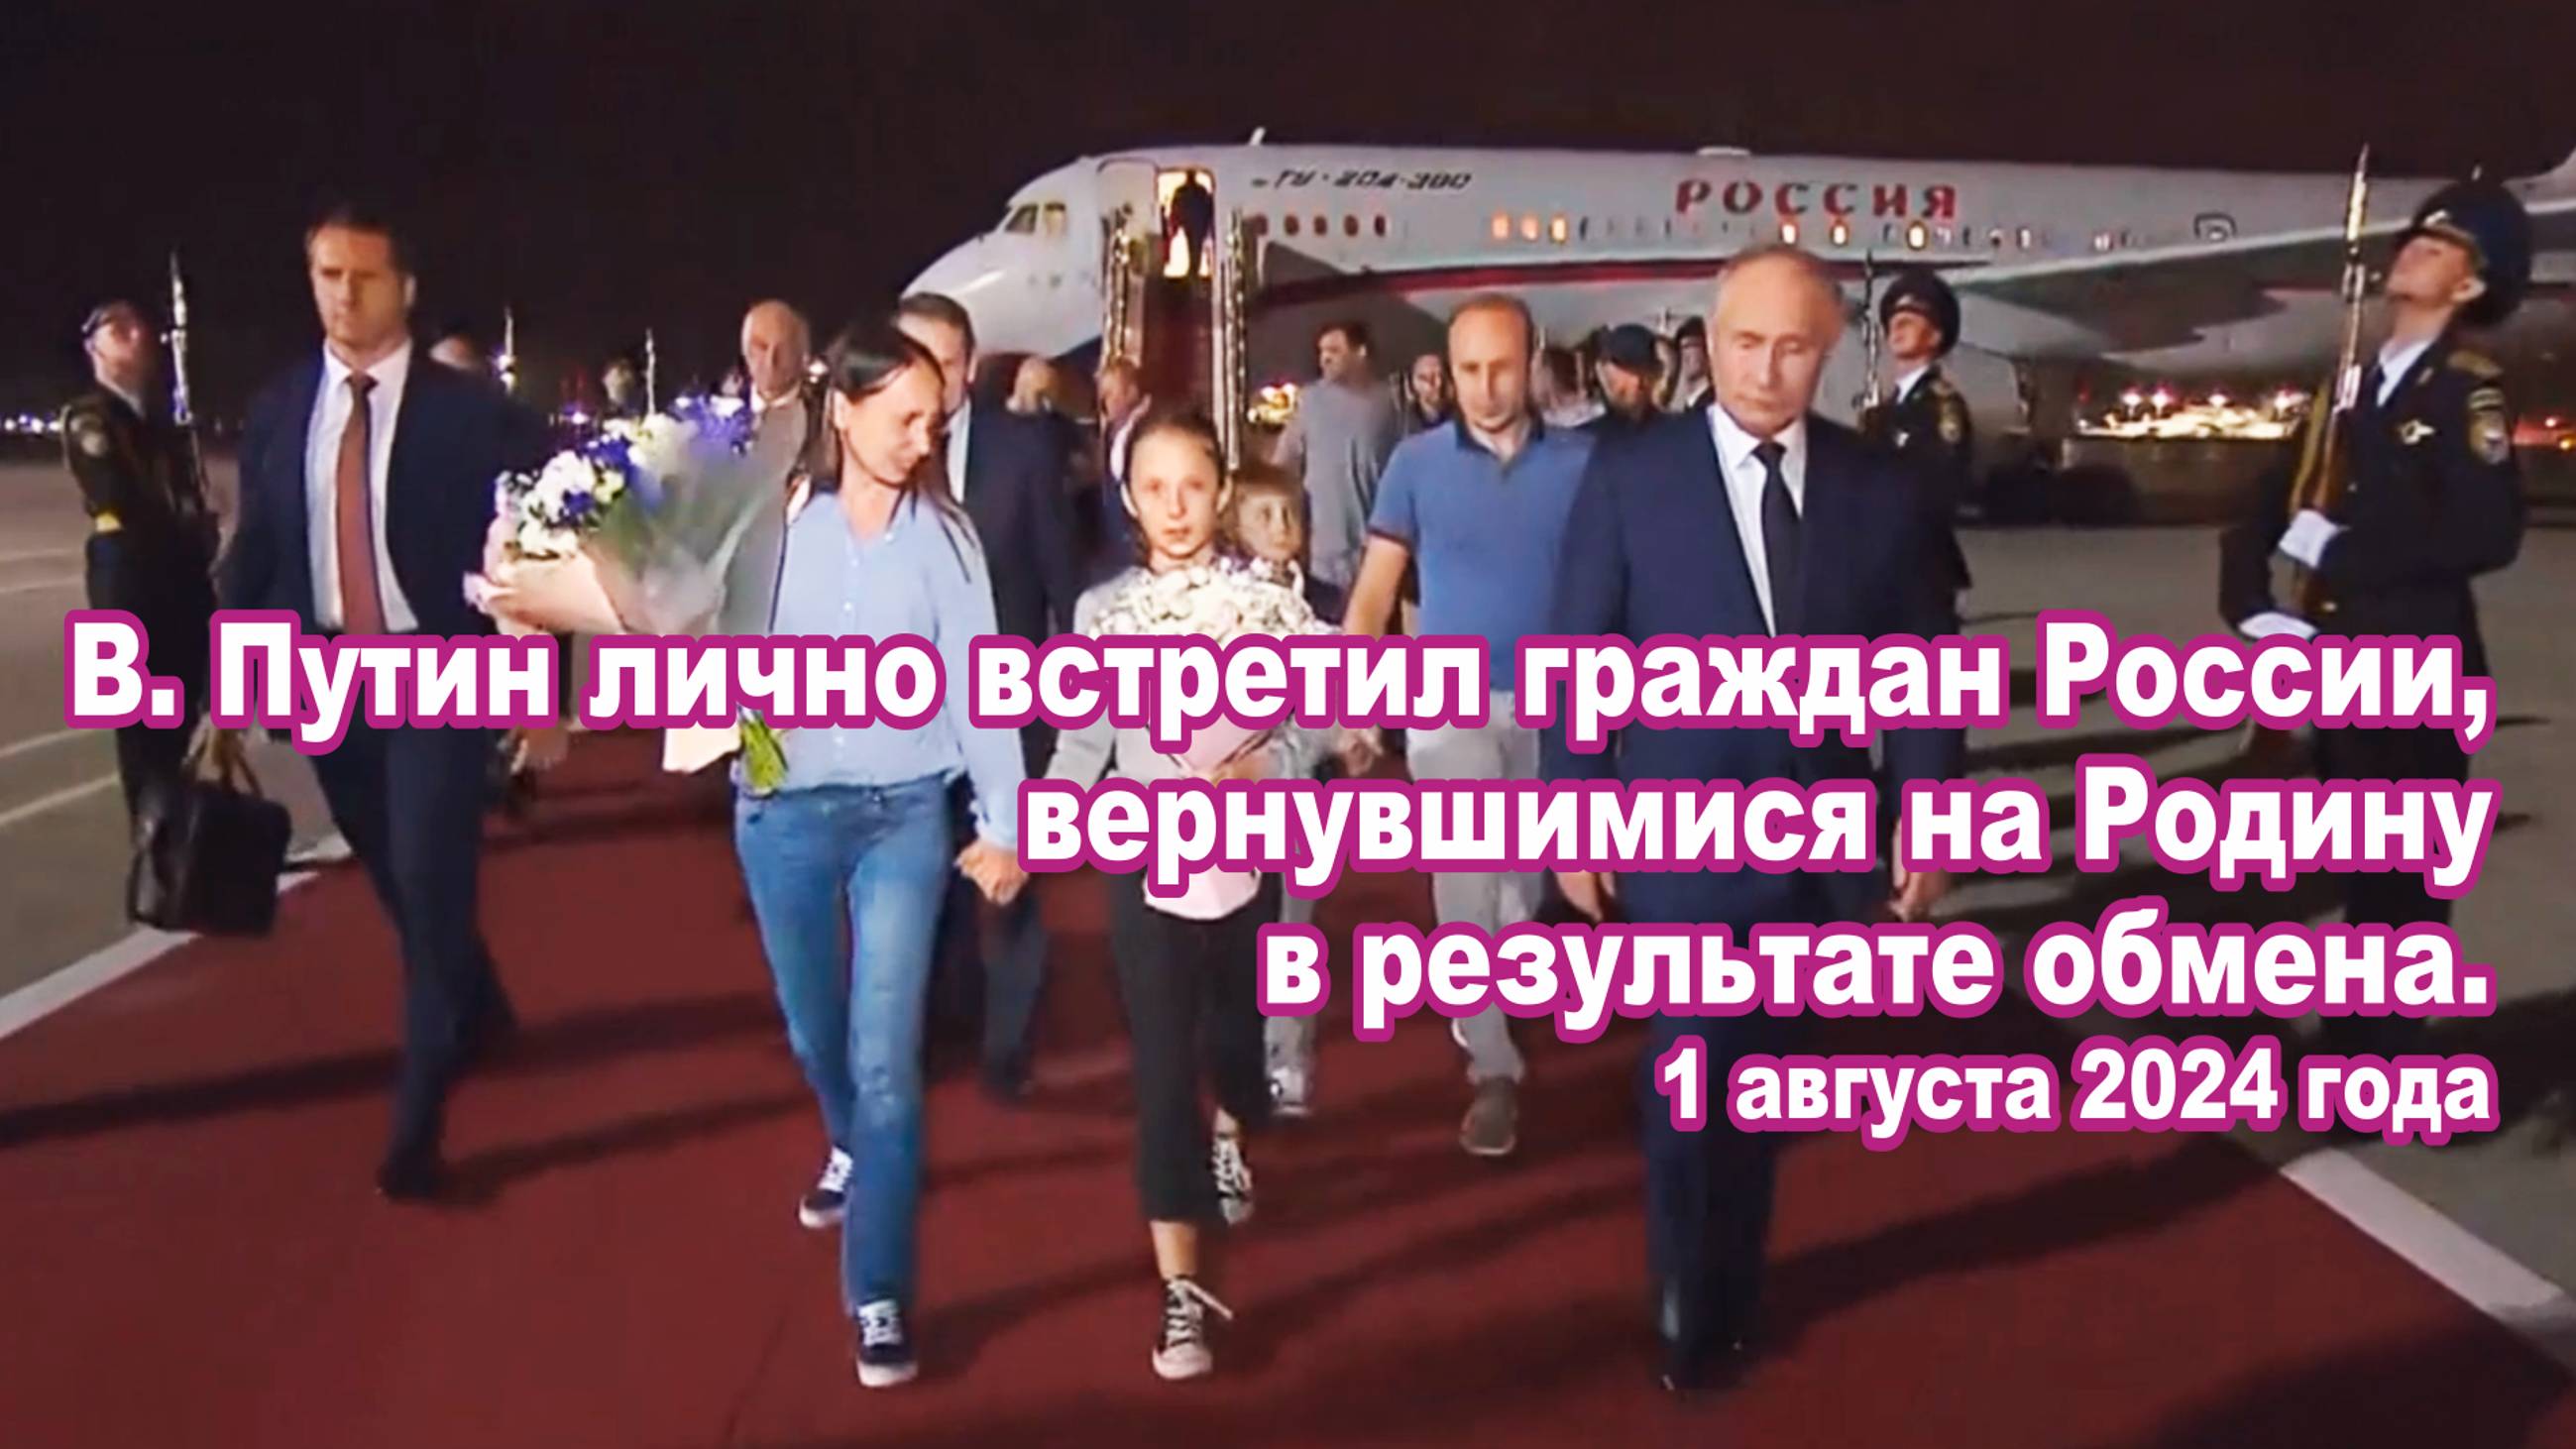 В. Путин лично встретил граждан России, вернувшимися на Родину в результате обмена.